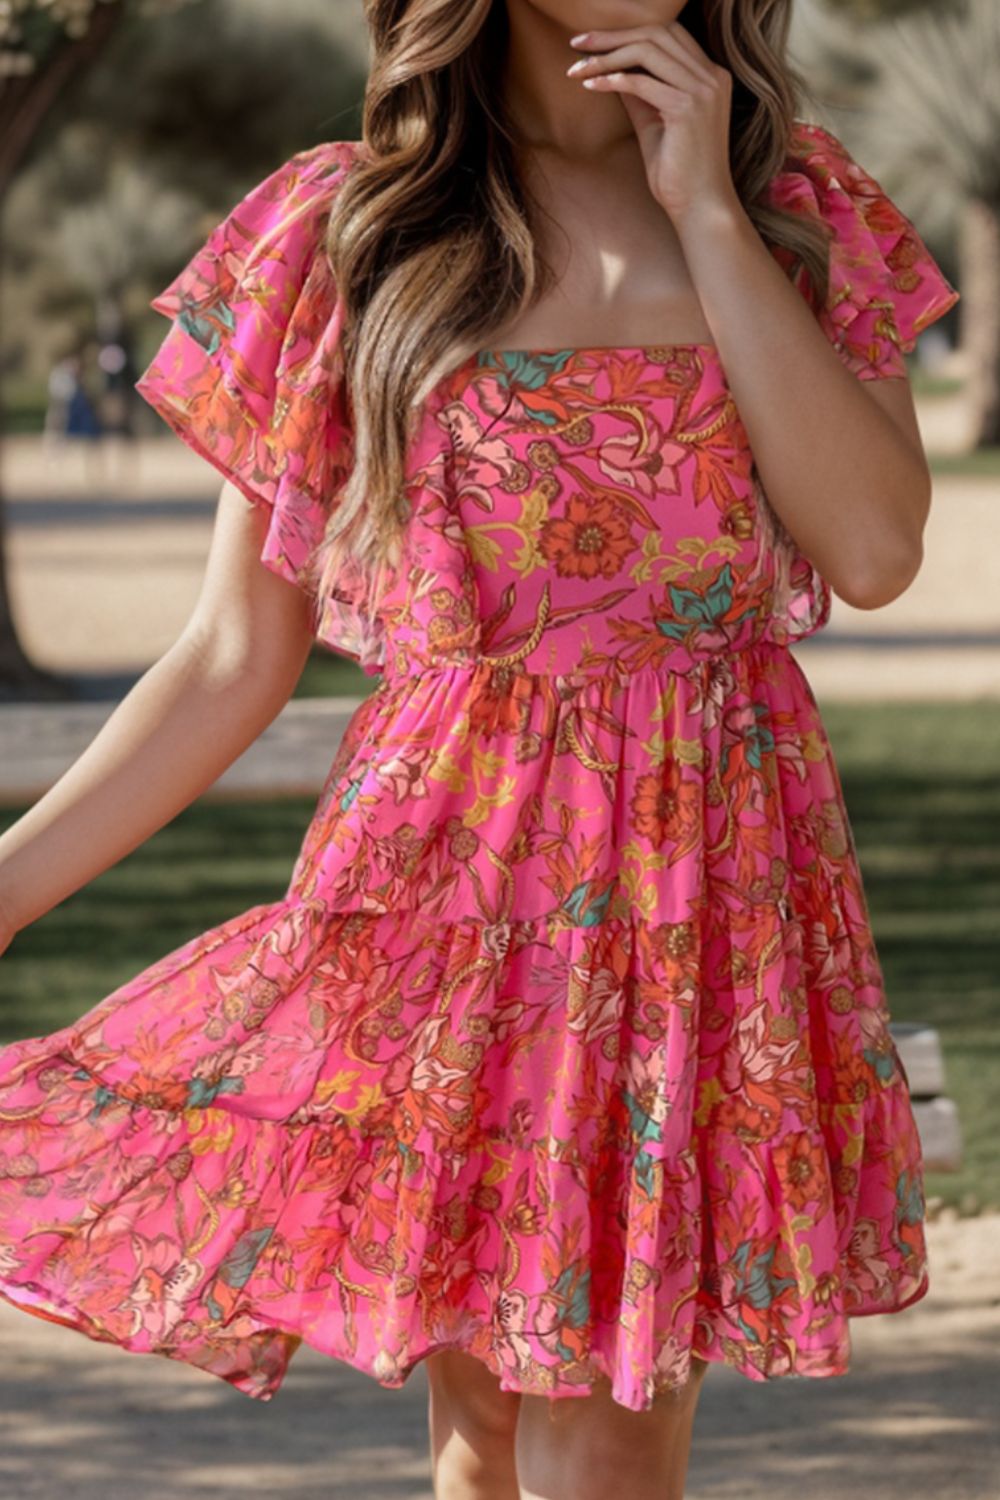 Ruffled Romantic Summer Dress